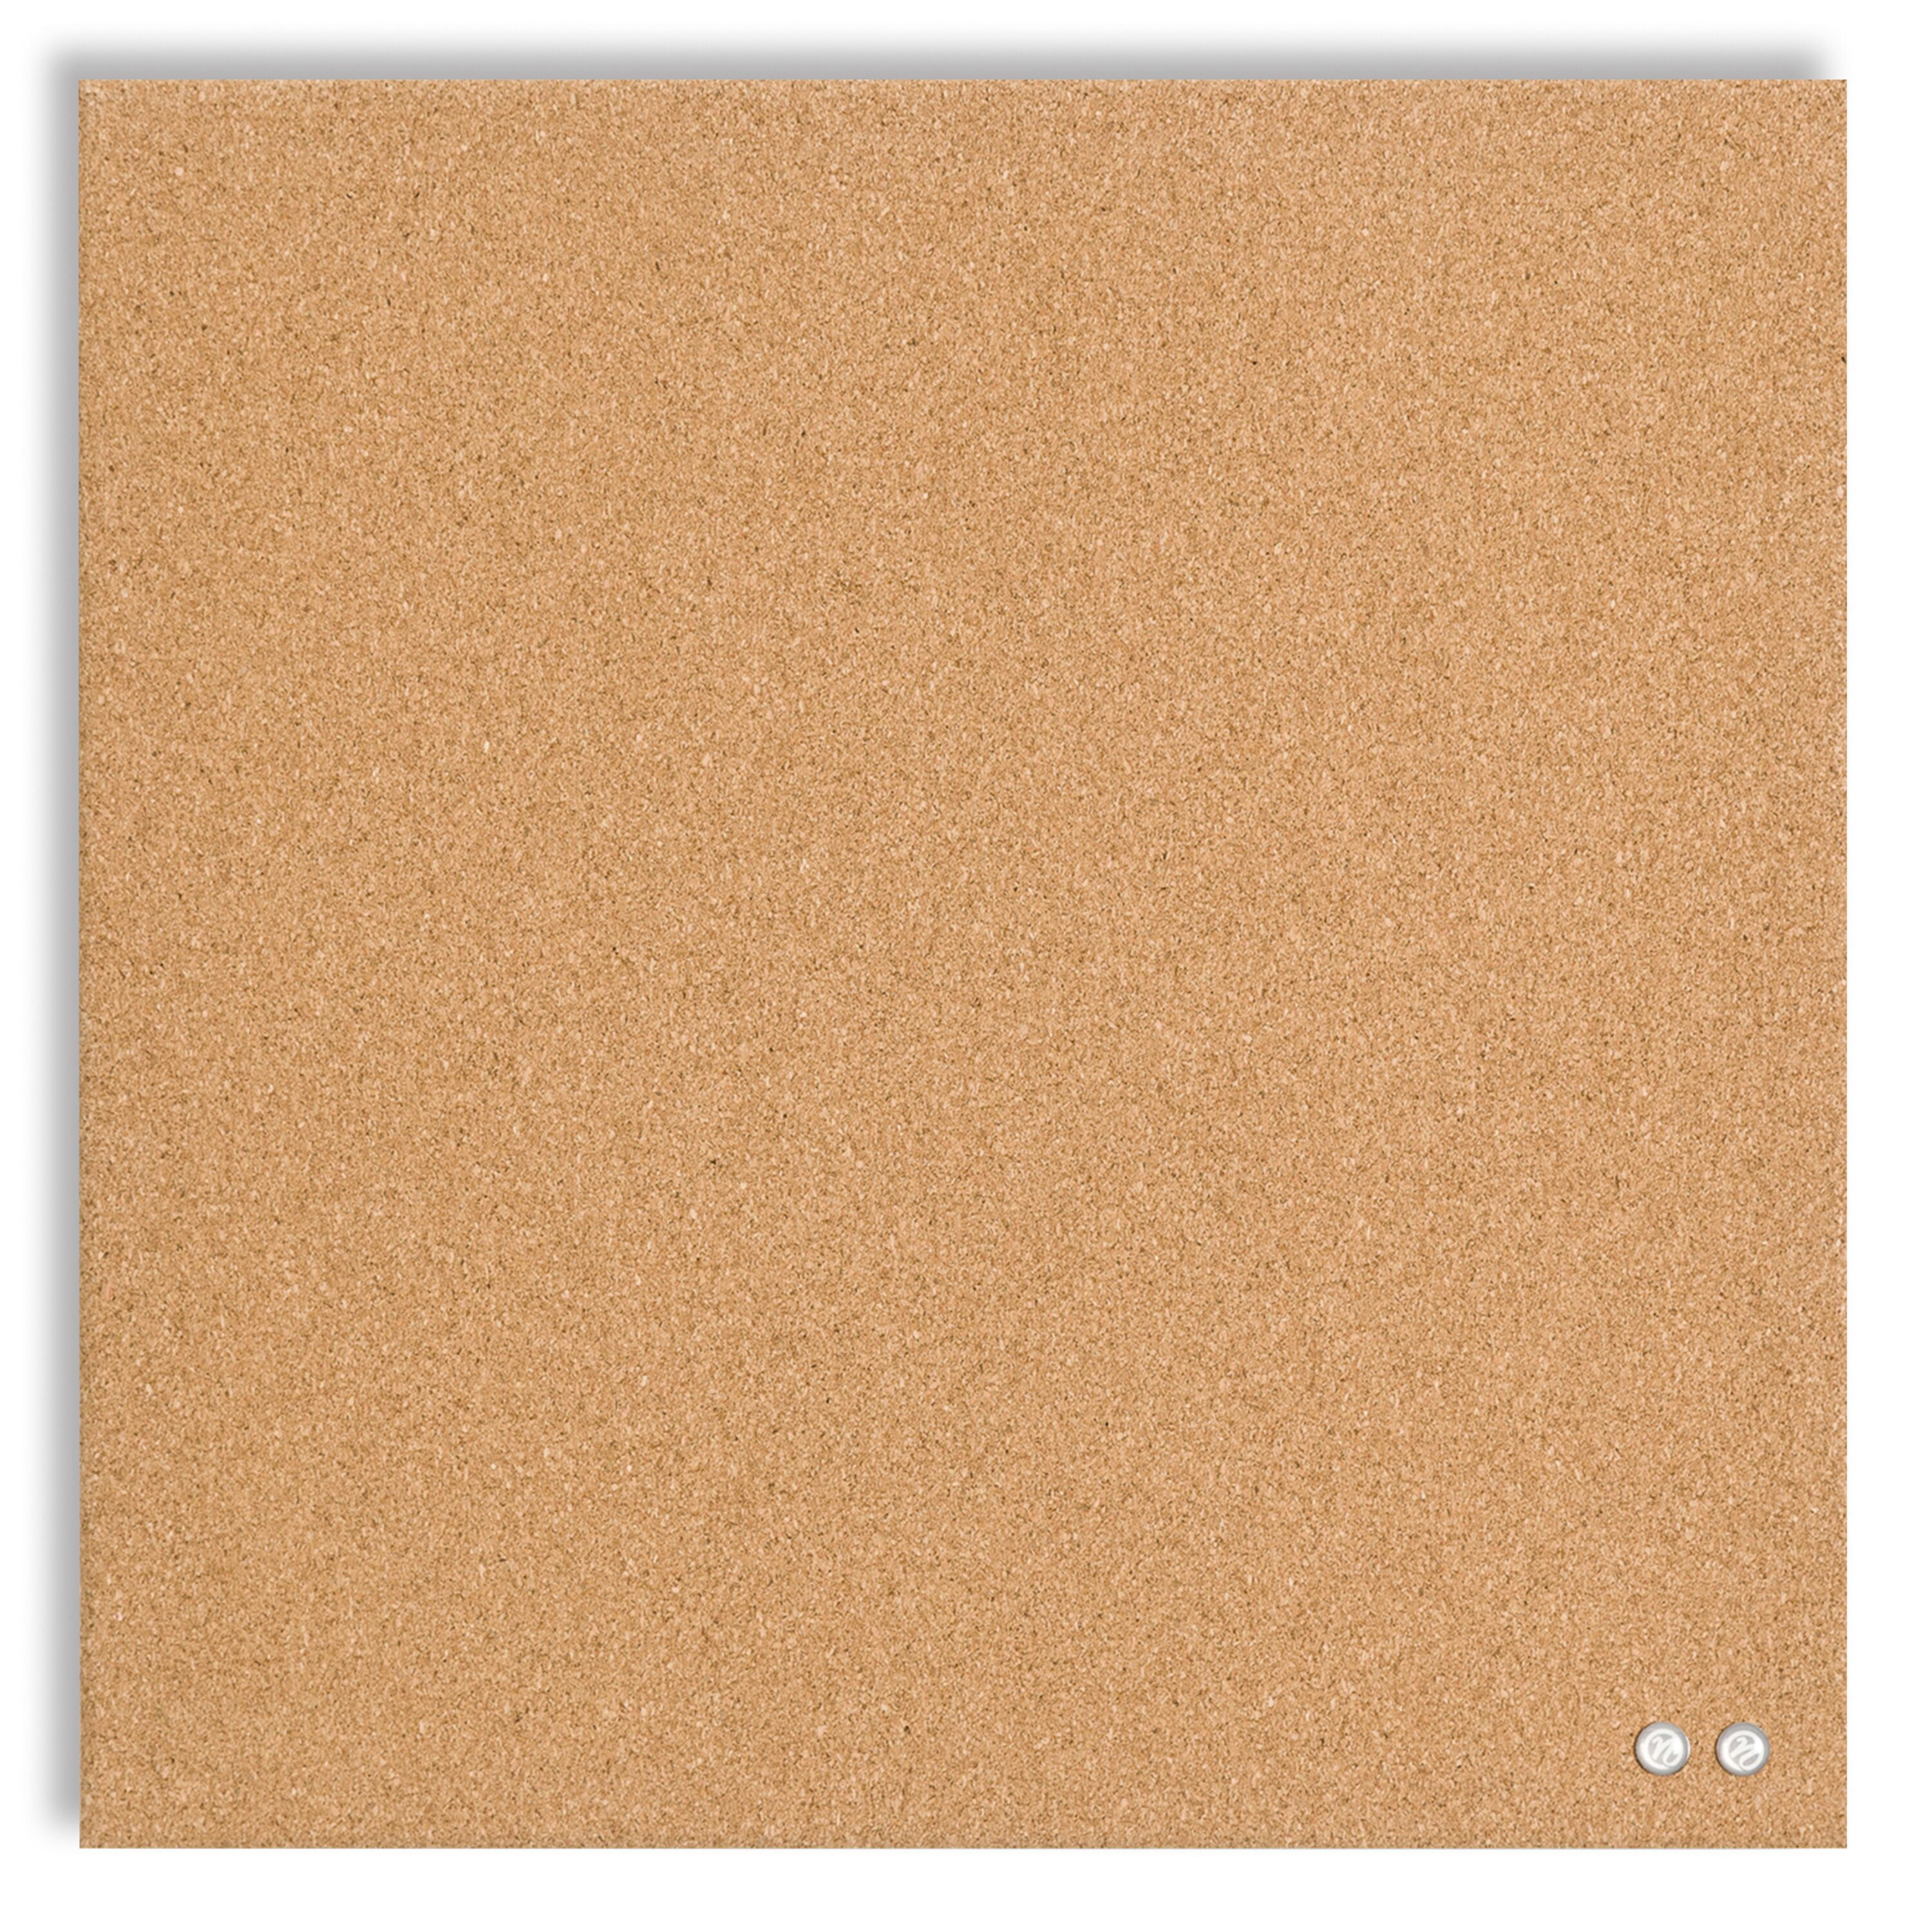 U Brands 14x14 Square Frameless Cork Board Tile